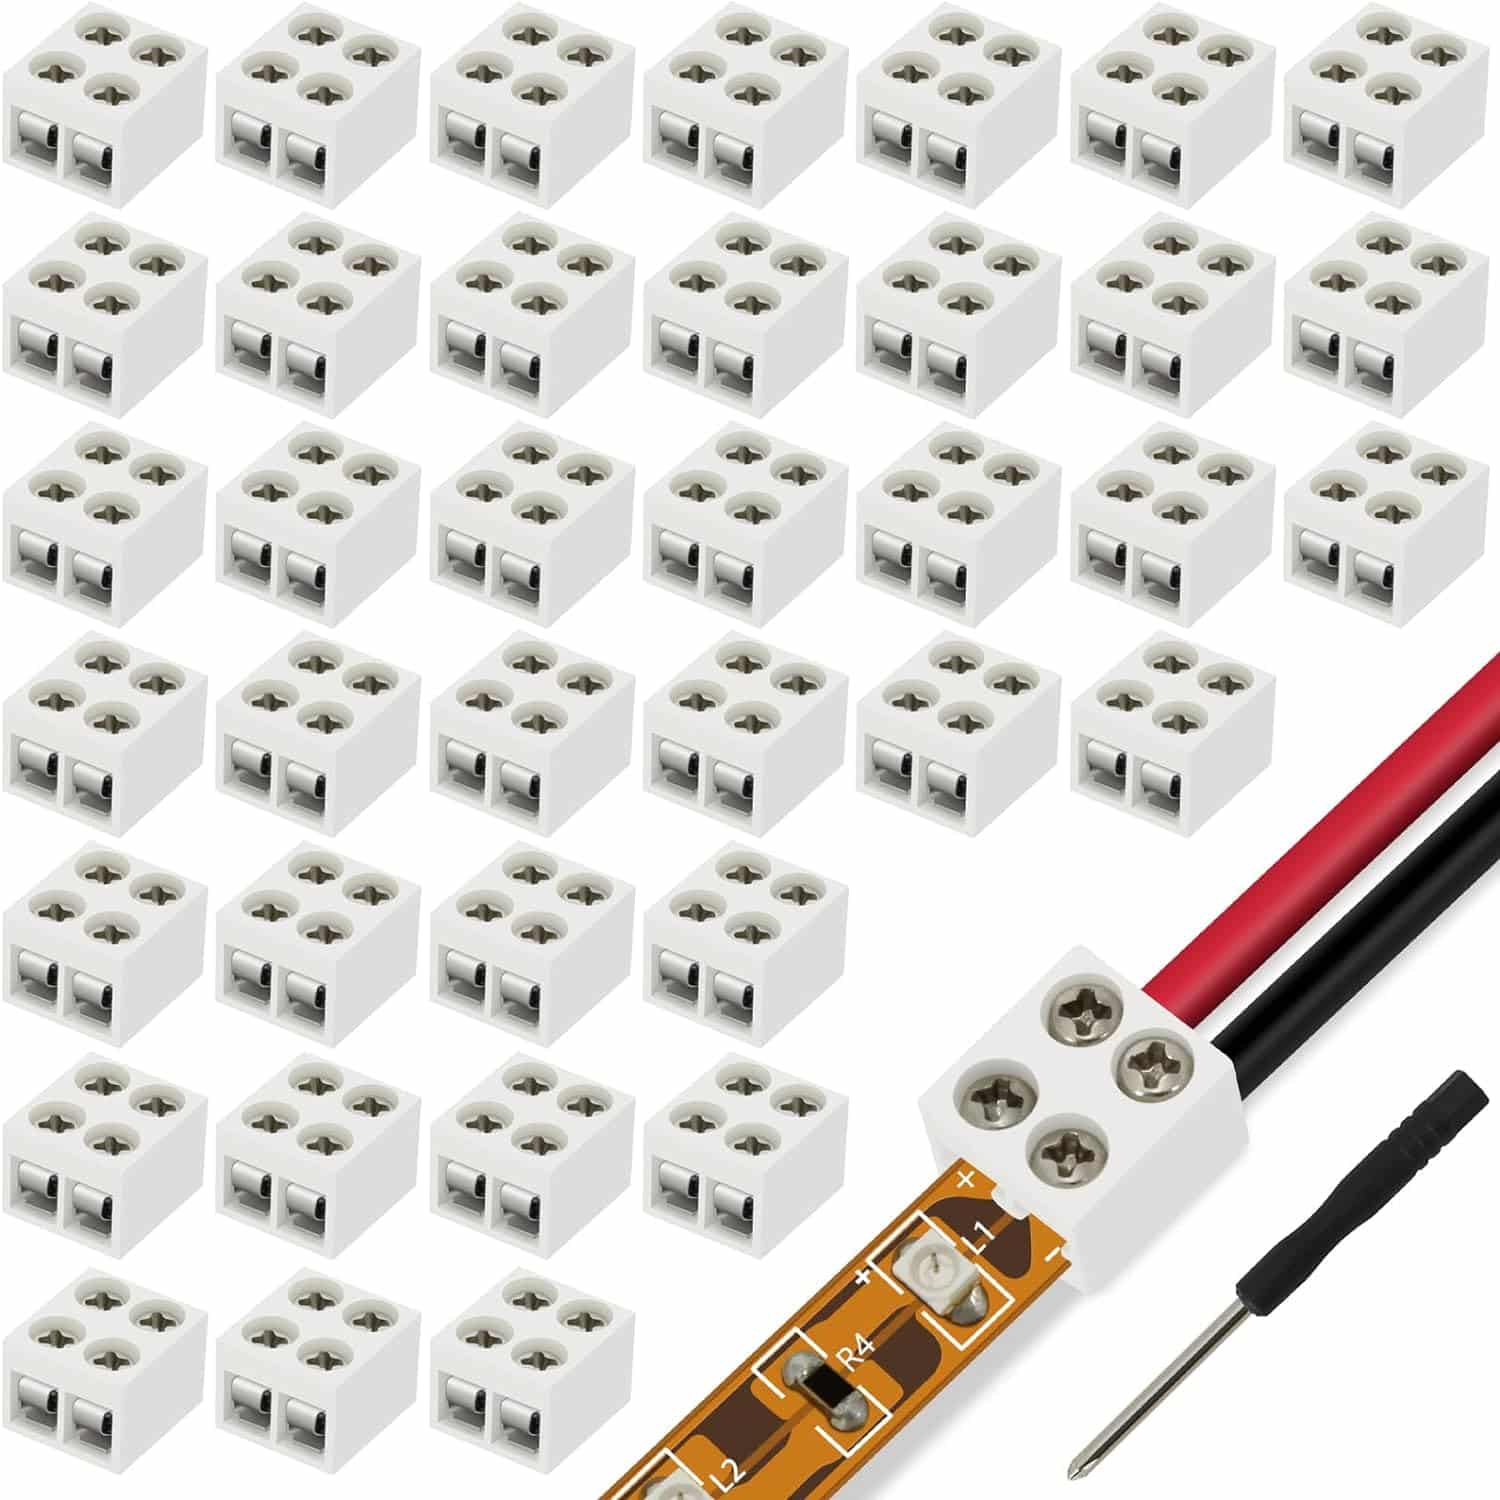 TTzycc 60 Pieces Solderless LED Tape Light Connectors Review